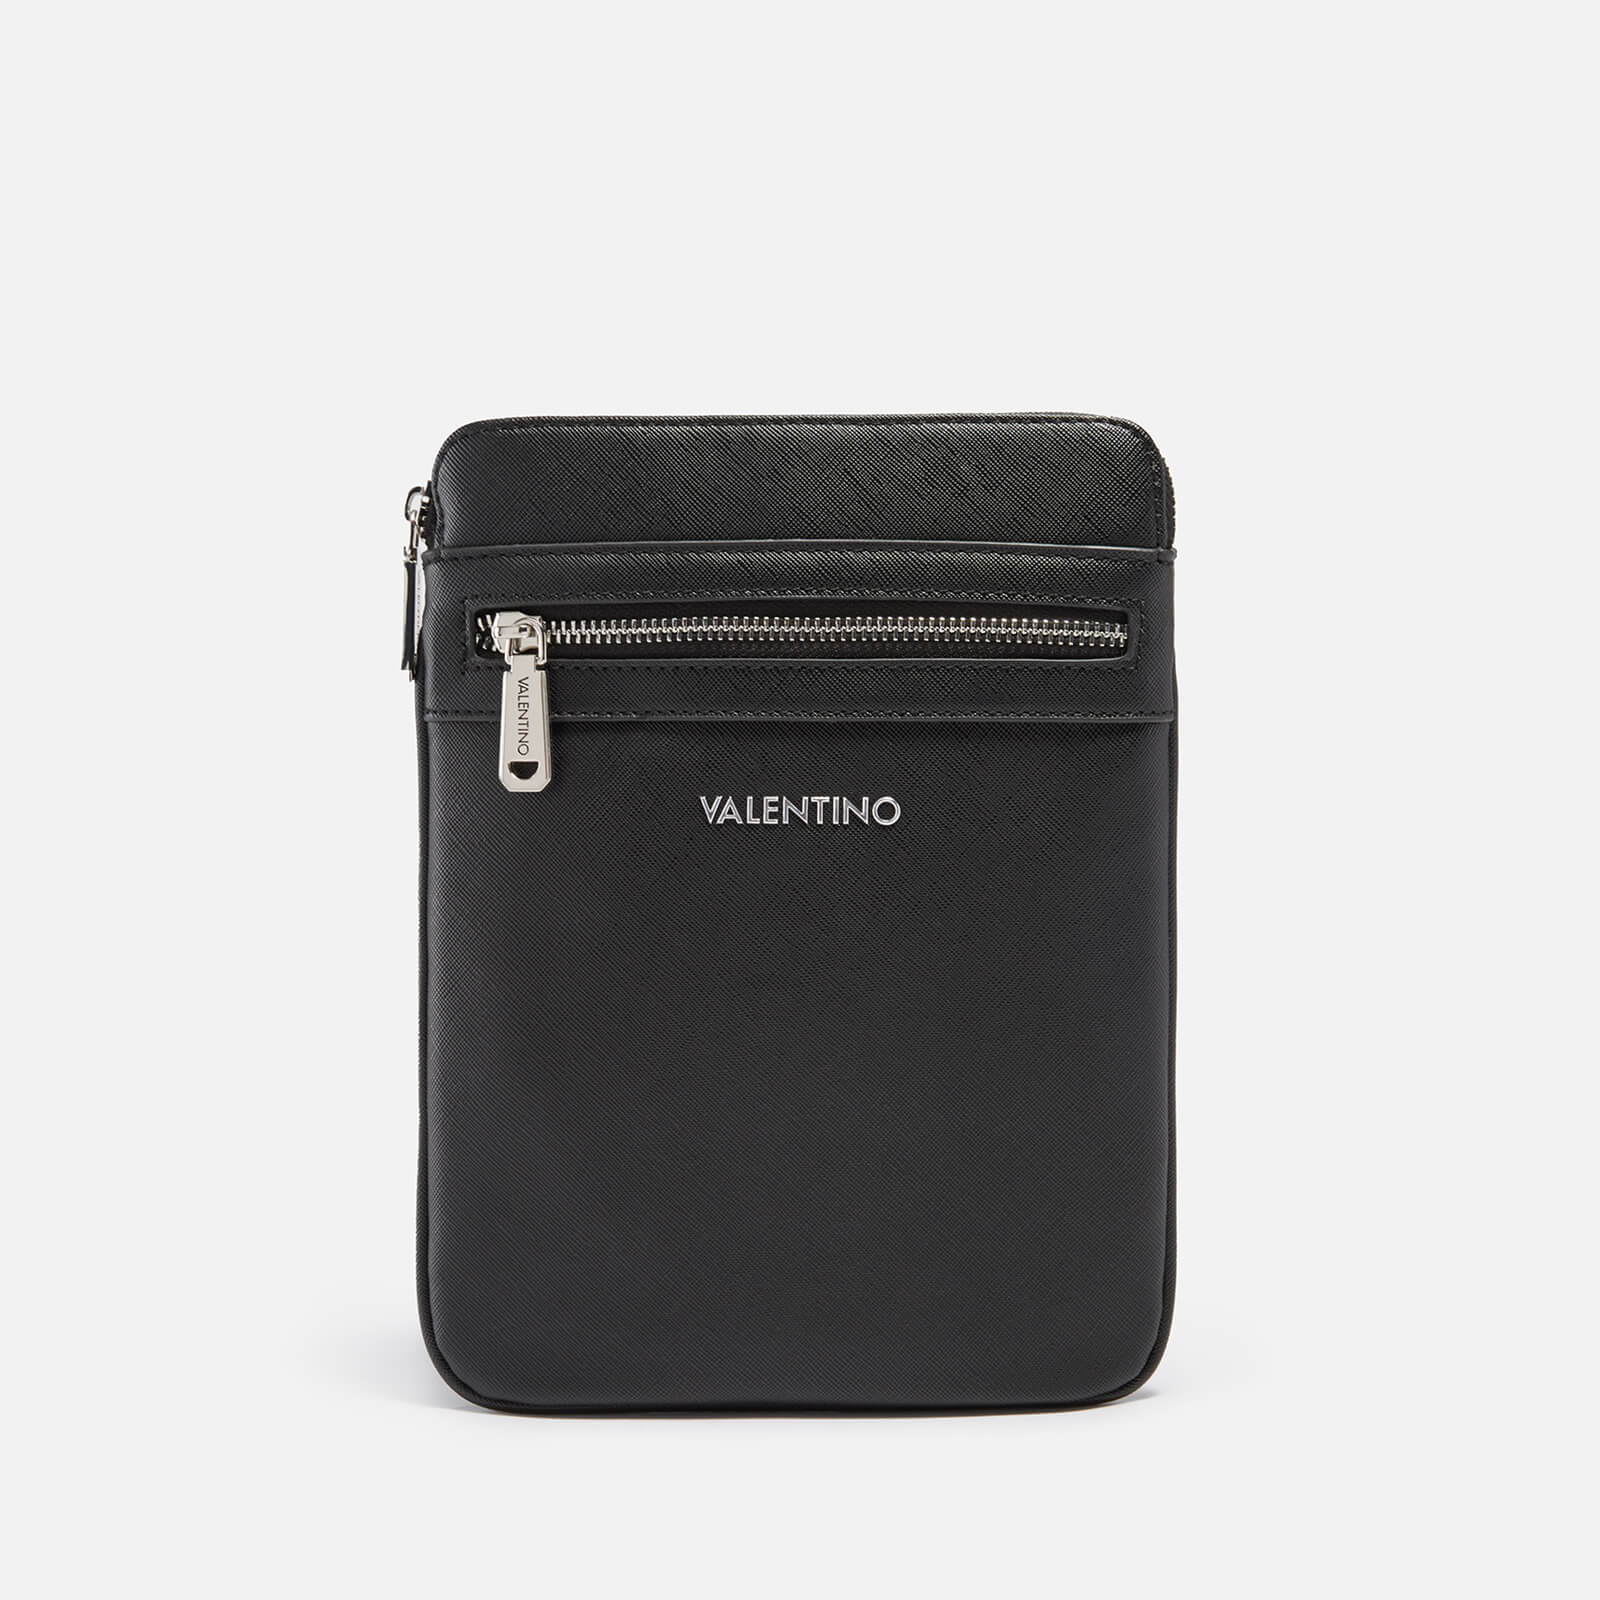 Valentino Men's Marnier Crossbody Bag - Black